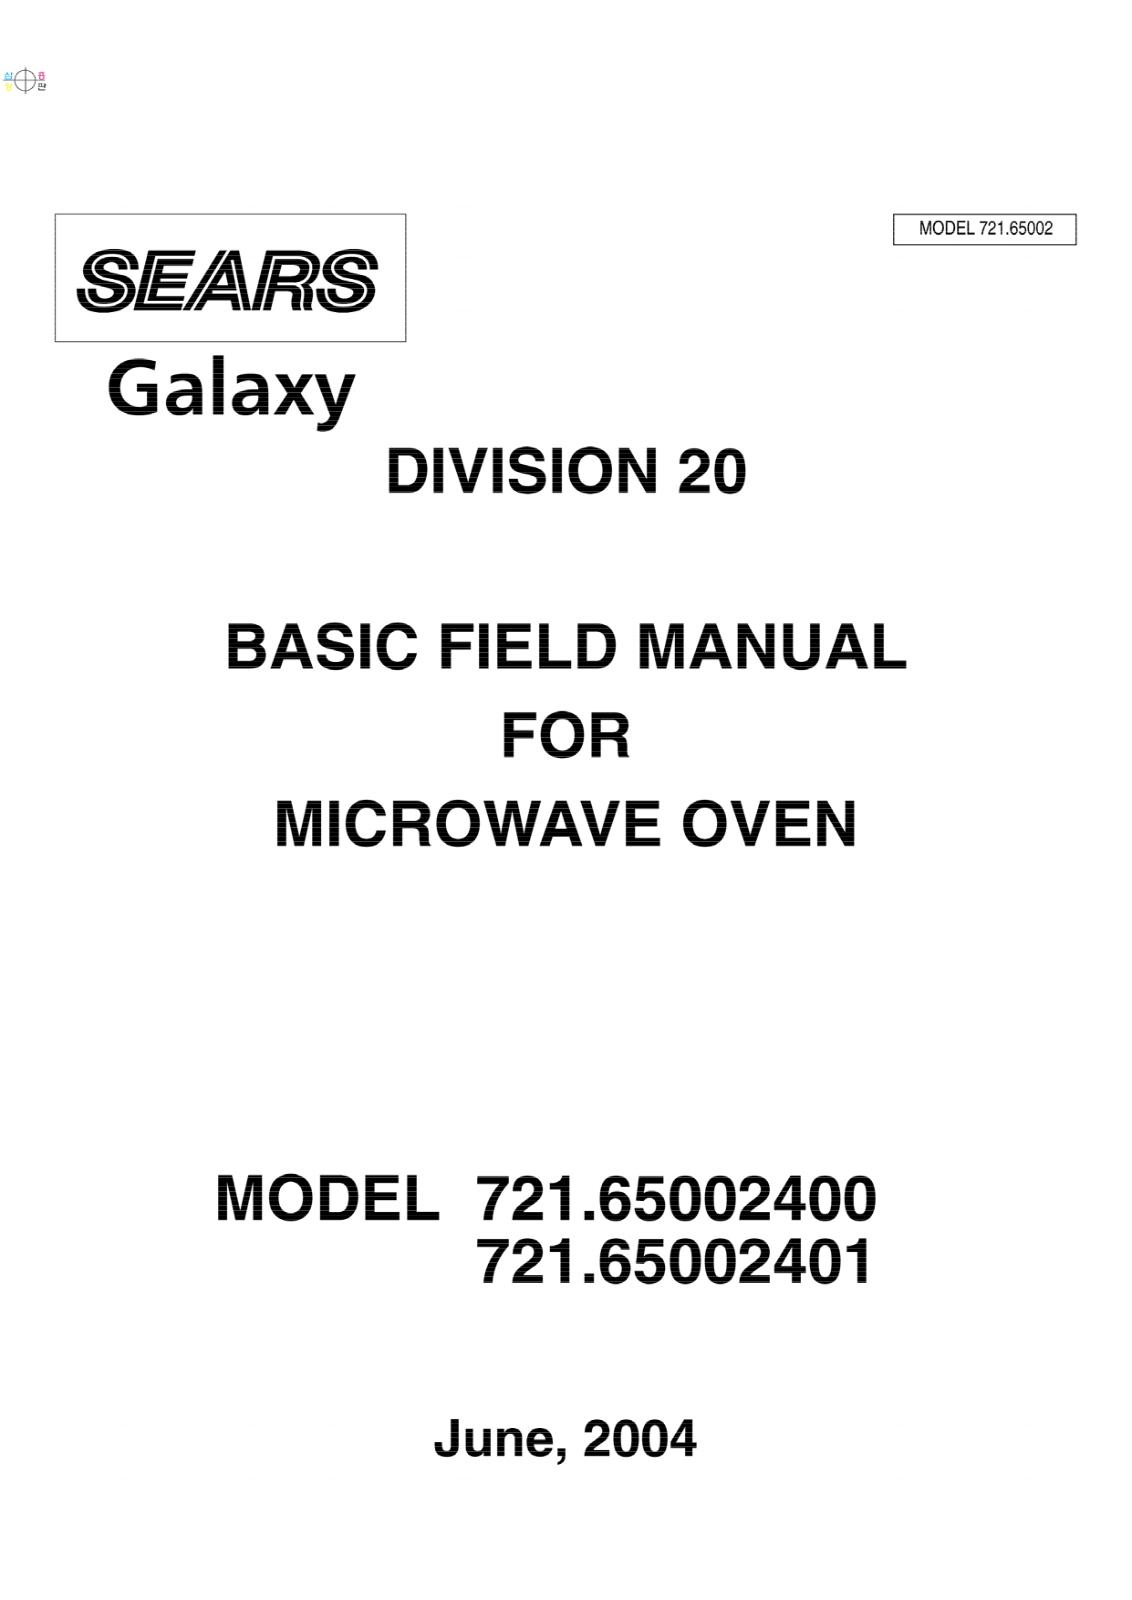 Kenmore 65002, 721.65002401, 721.65002400 Owner's Manual